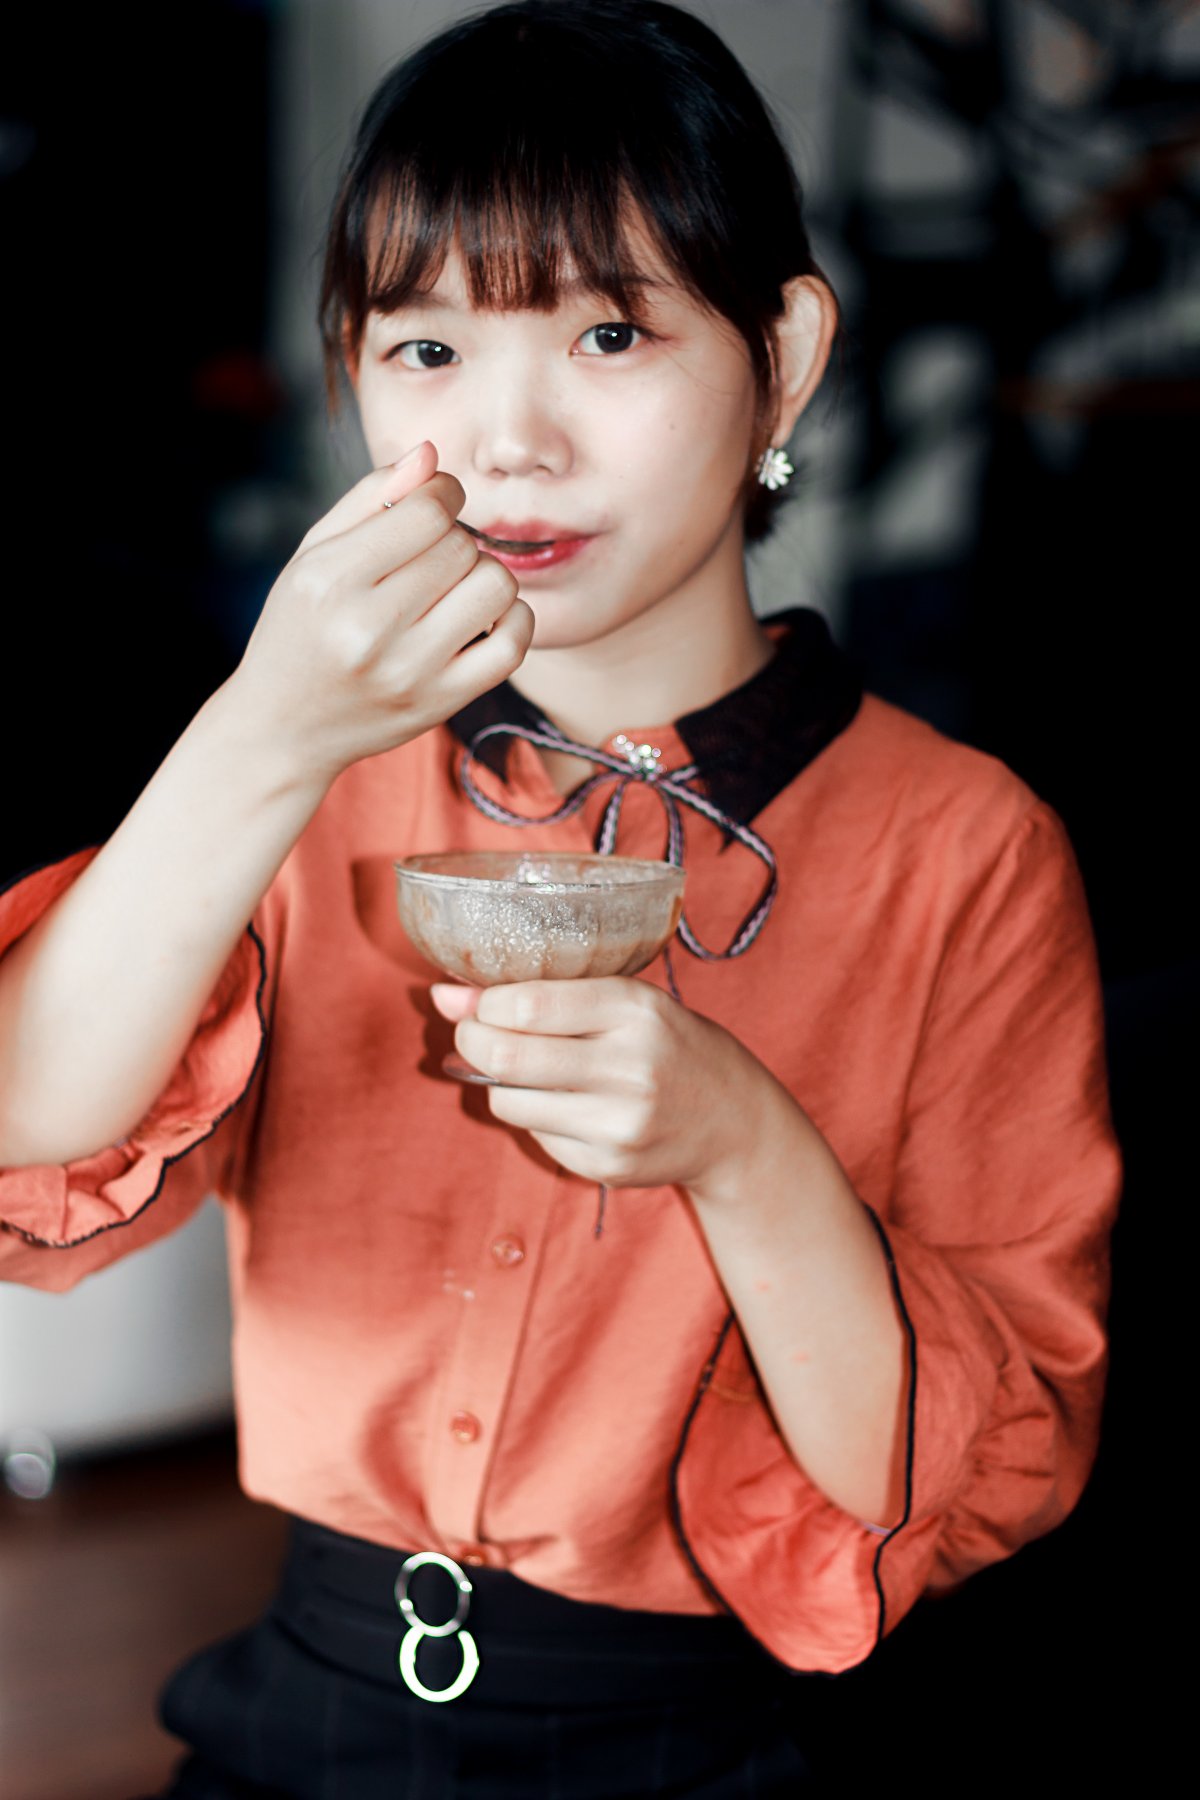 중국의 여신 판빙빙 최근 모습 - 해외 연예가 소식 - 네모판